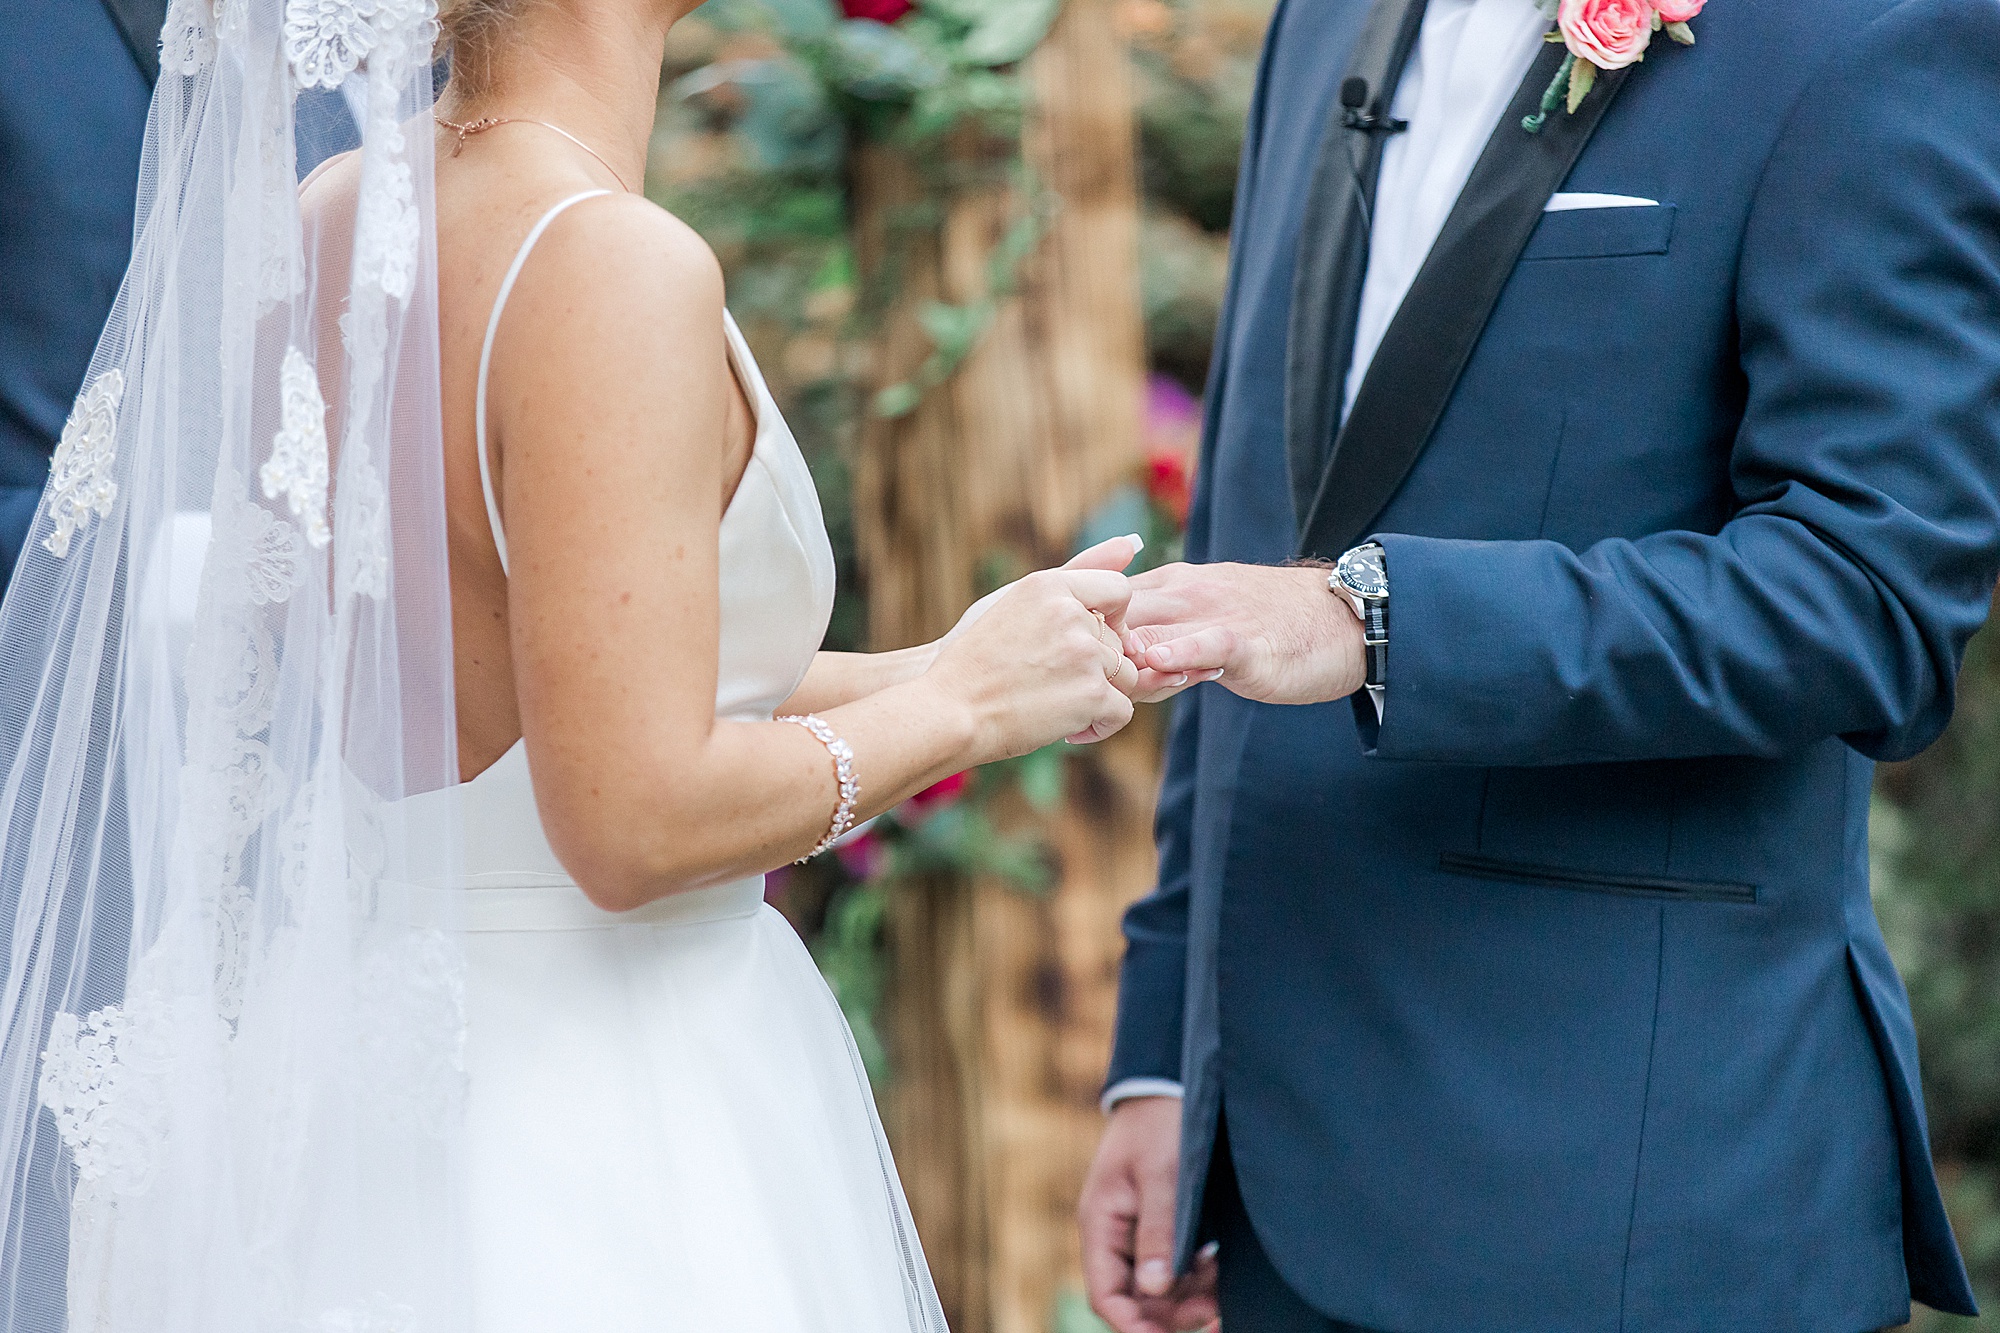 groom and bride exchange wedding rings